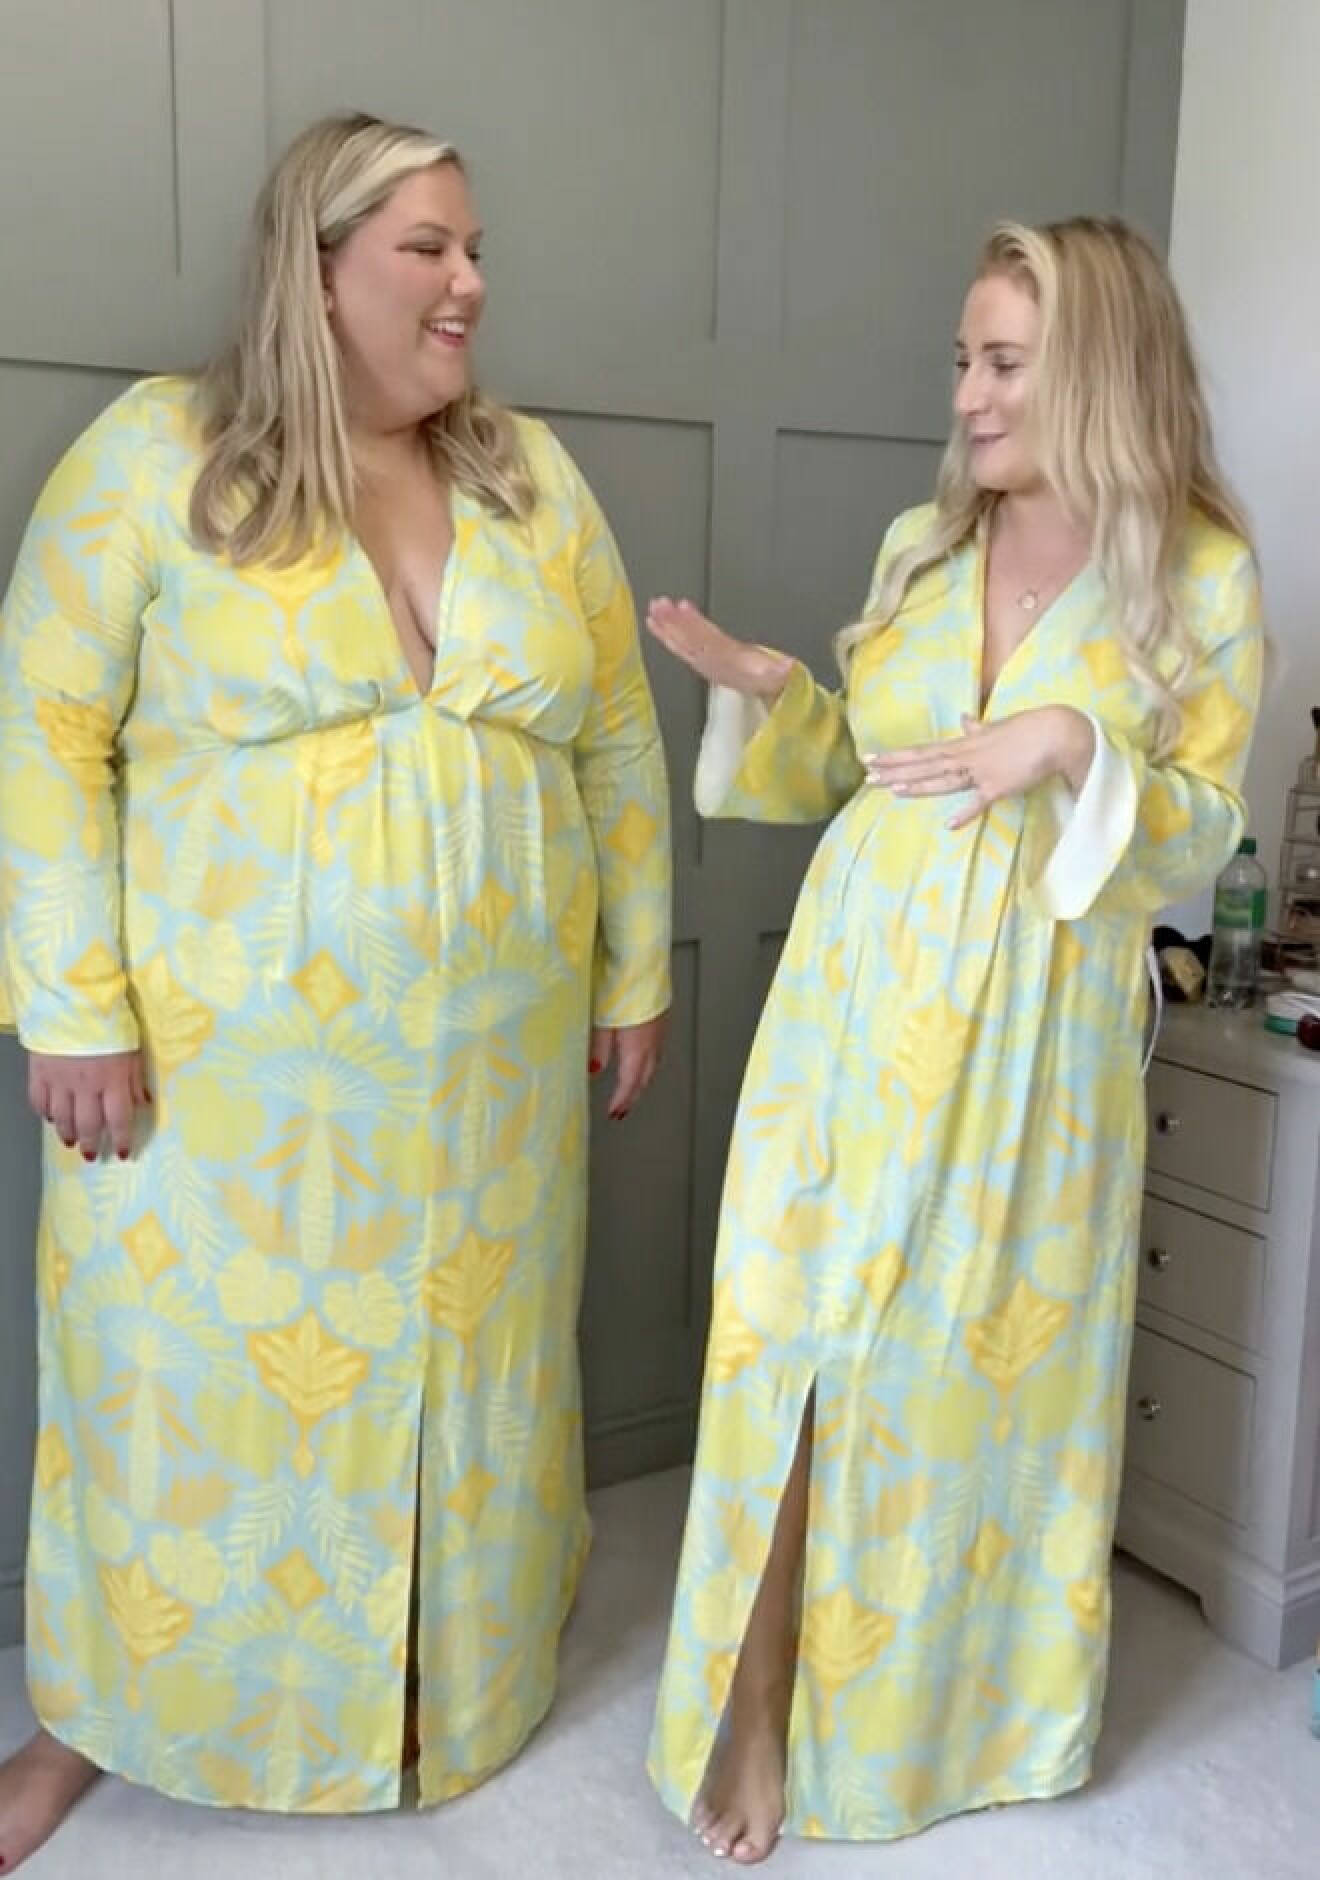 Lottie och Laura har olika storlekar, och testar likadana kläder.